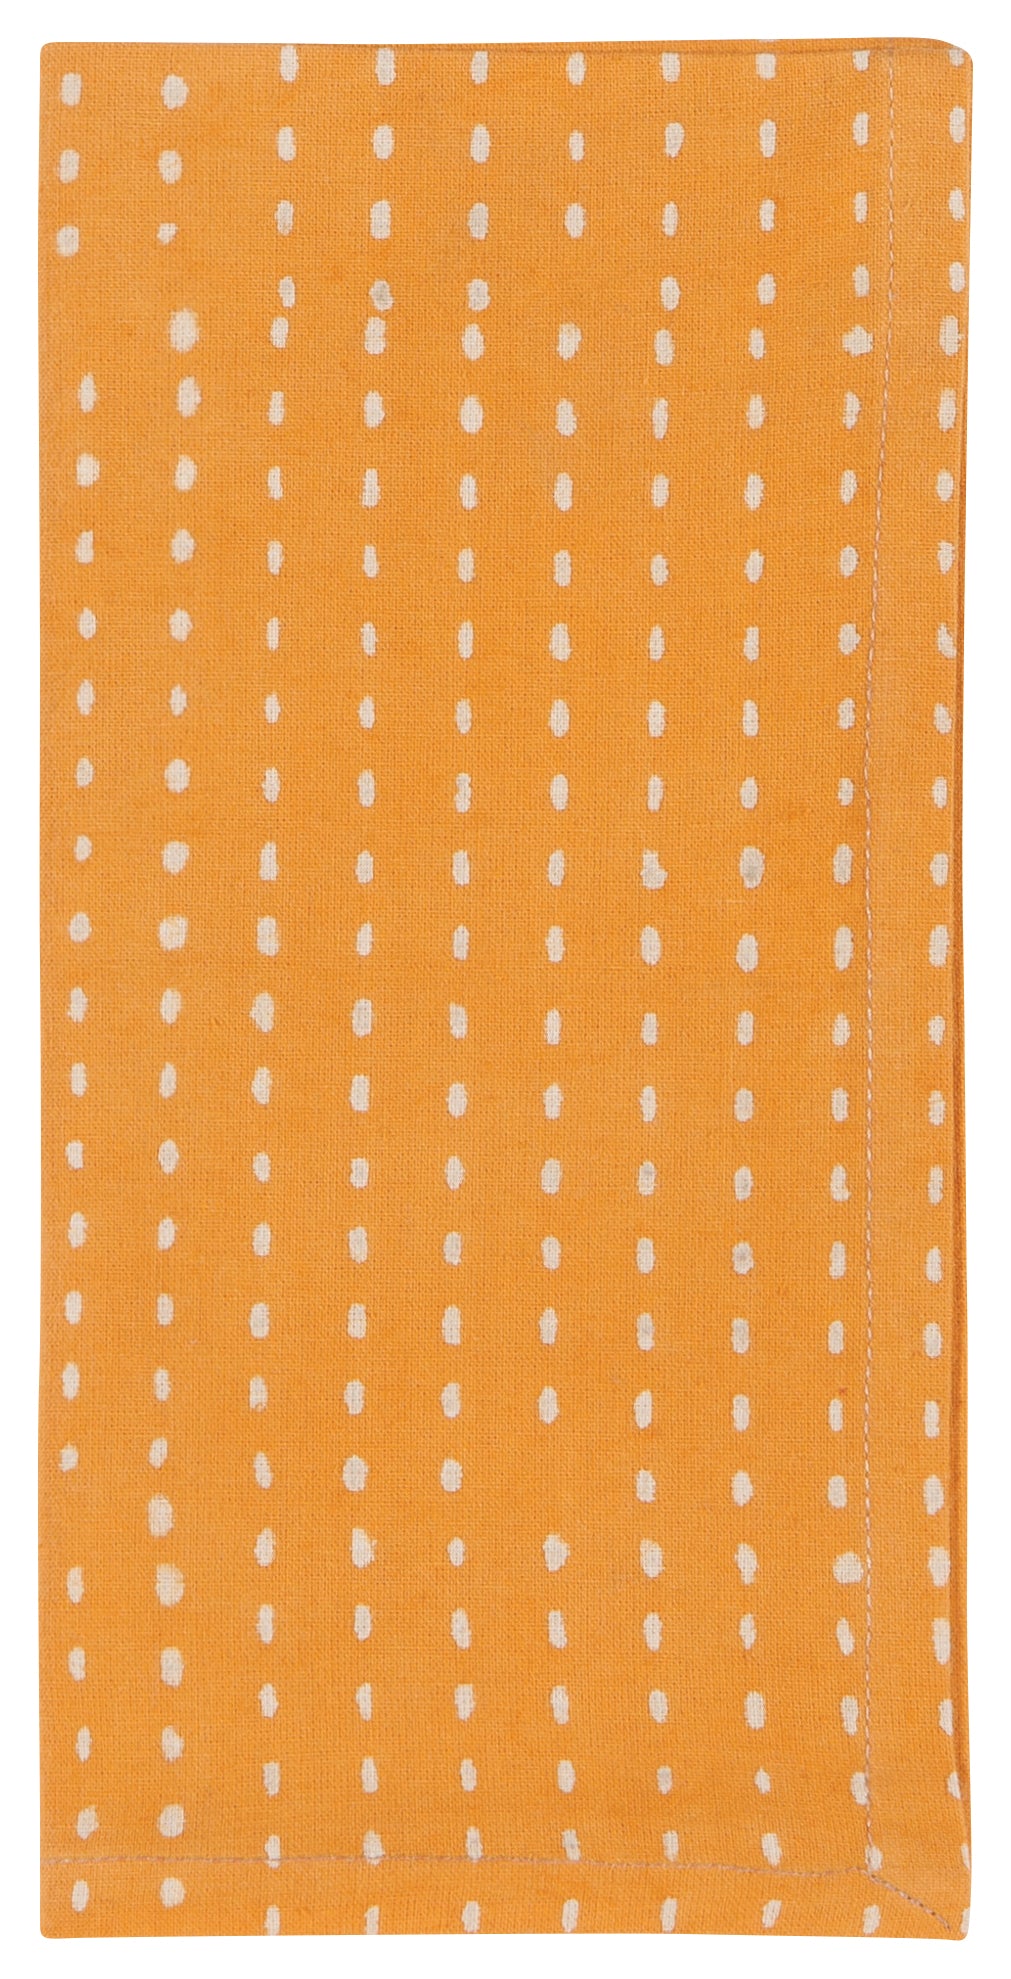 Block Print Field Napkin Set of 4